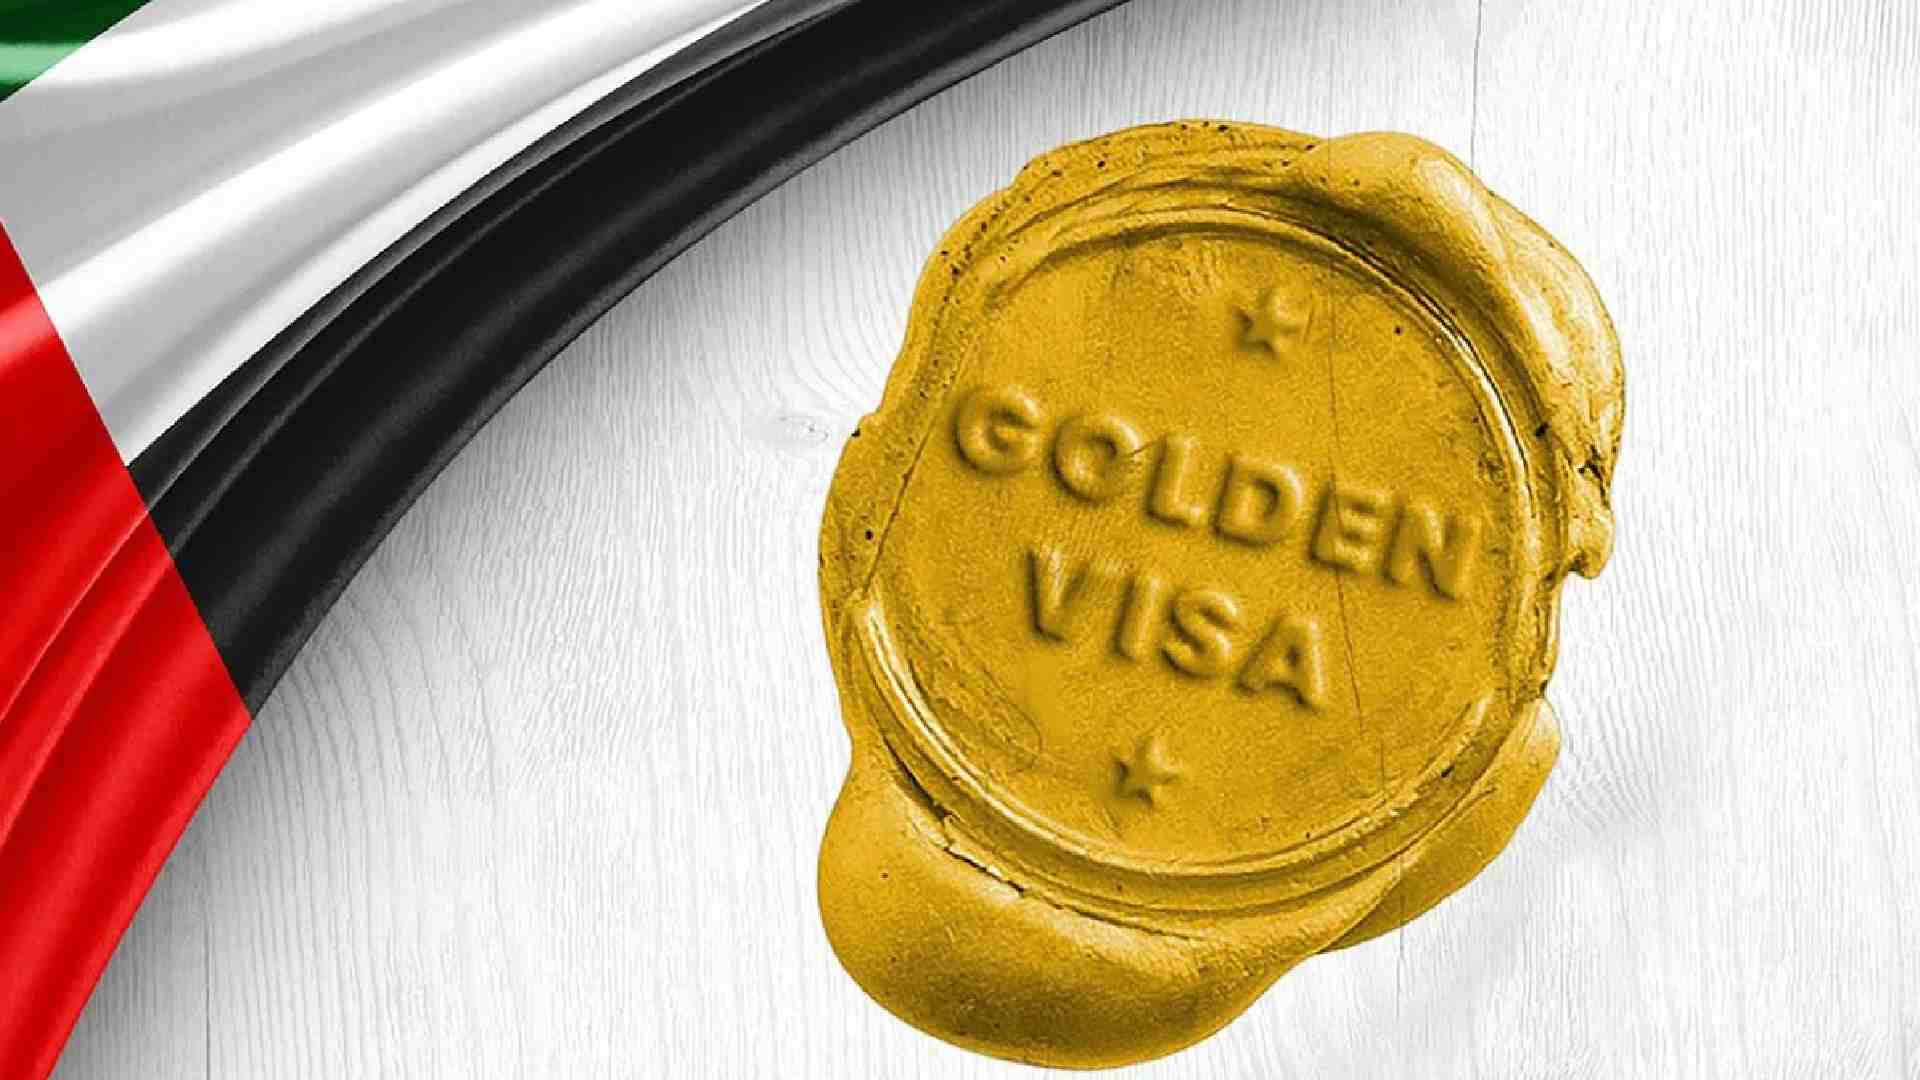 UAE golden visa 